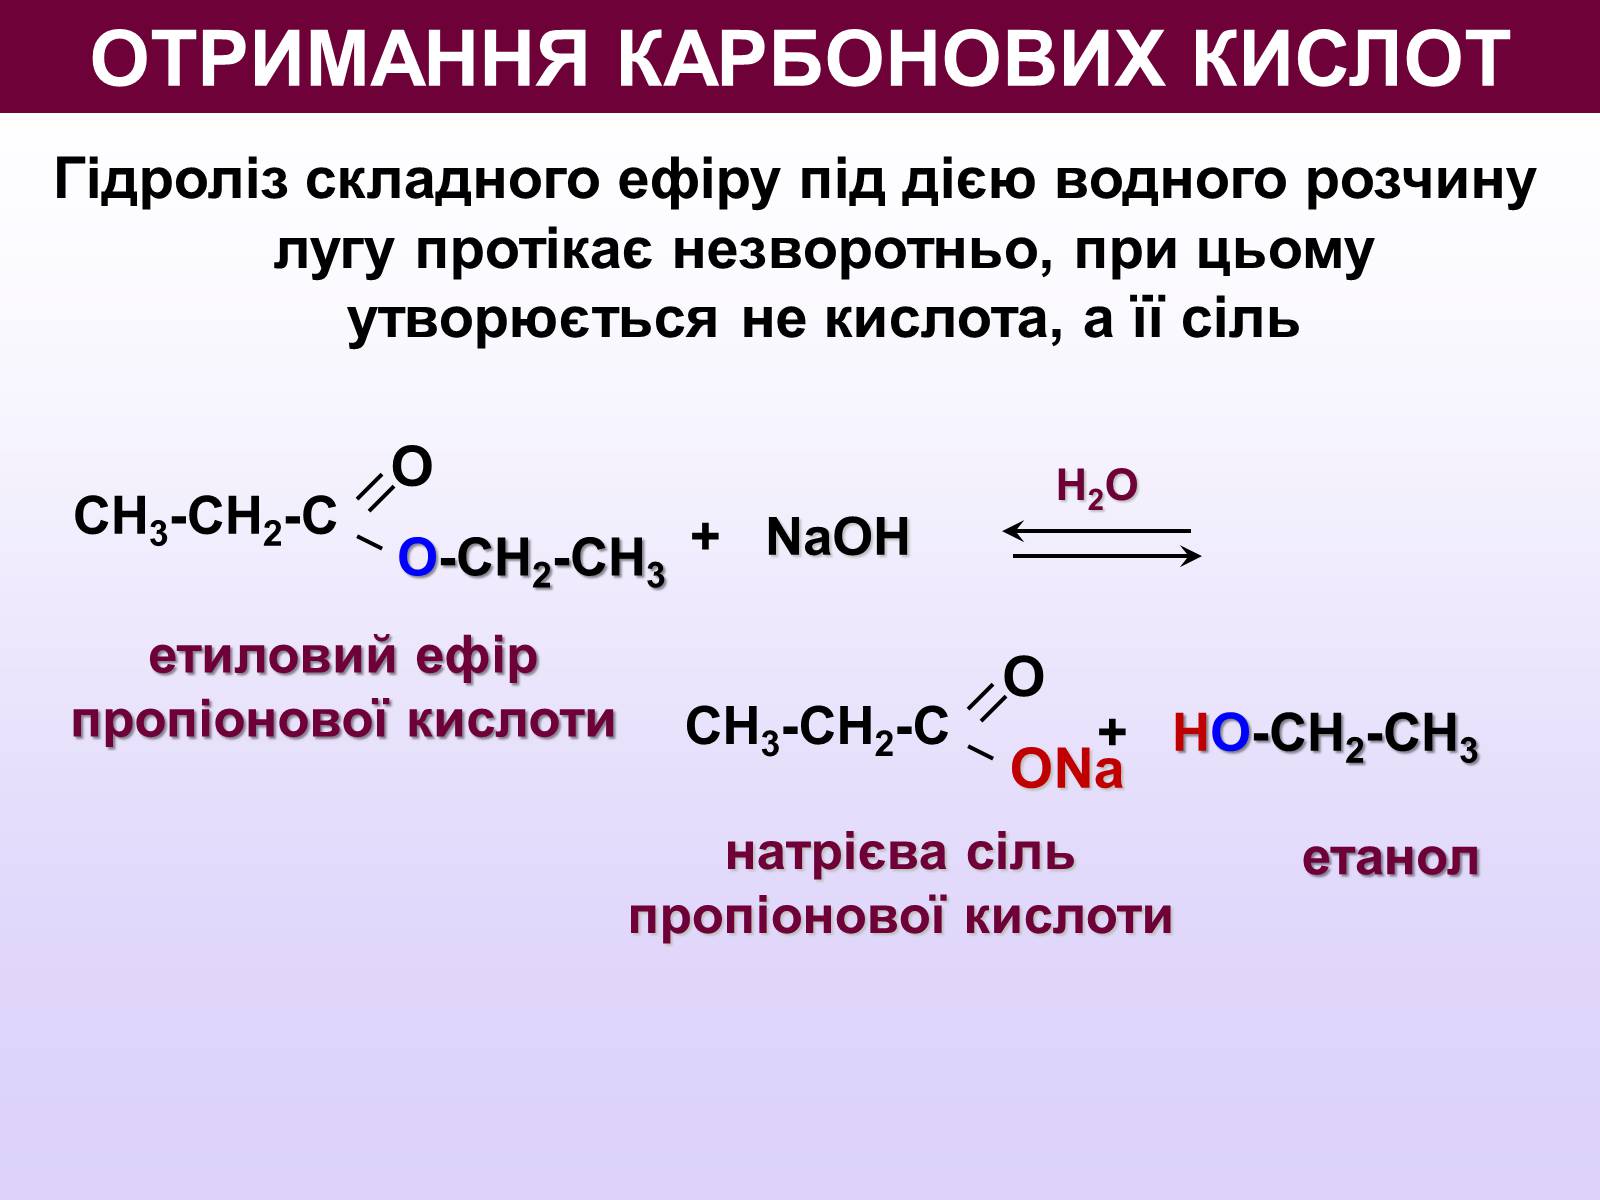 Щелочной гидролиз этилацетата реакция. Способы получения карбоновых кислот. Методы синтеза карбоновых кислот. Способы получения карбоновых кислот реакции. Щелочной гидролиз сложных эфиров.